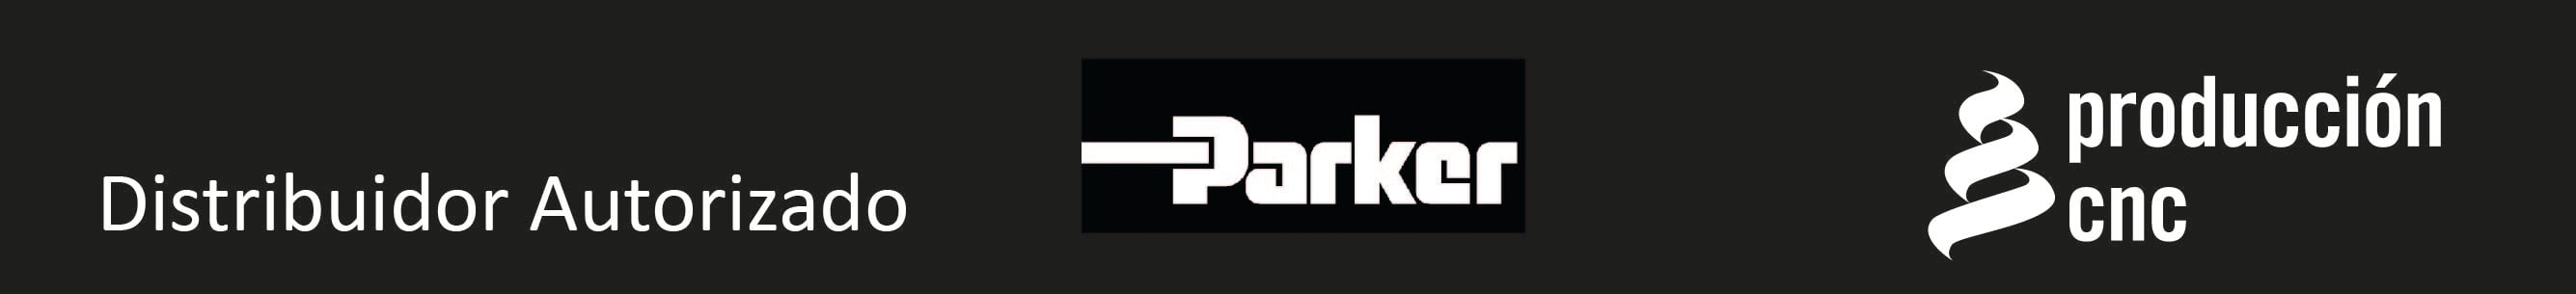 Parker CNC